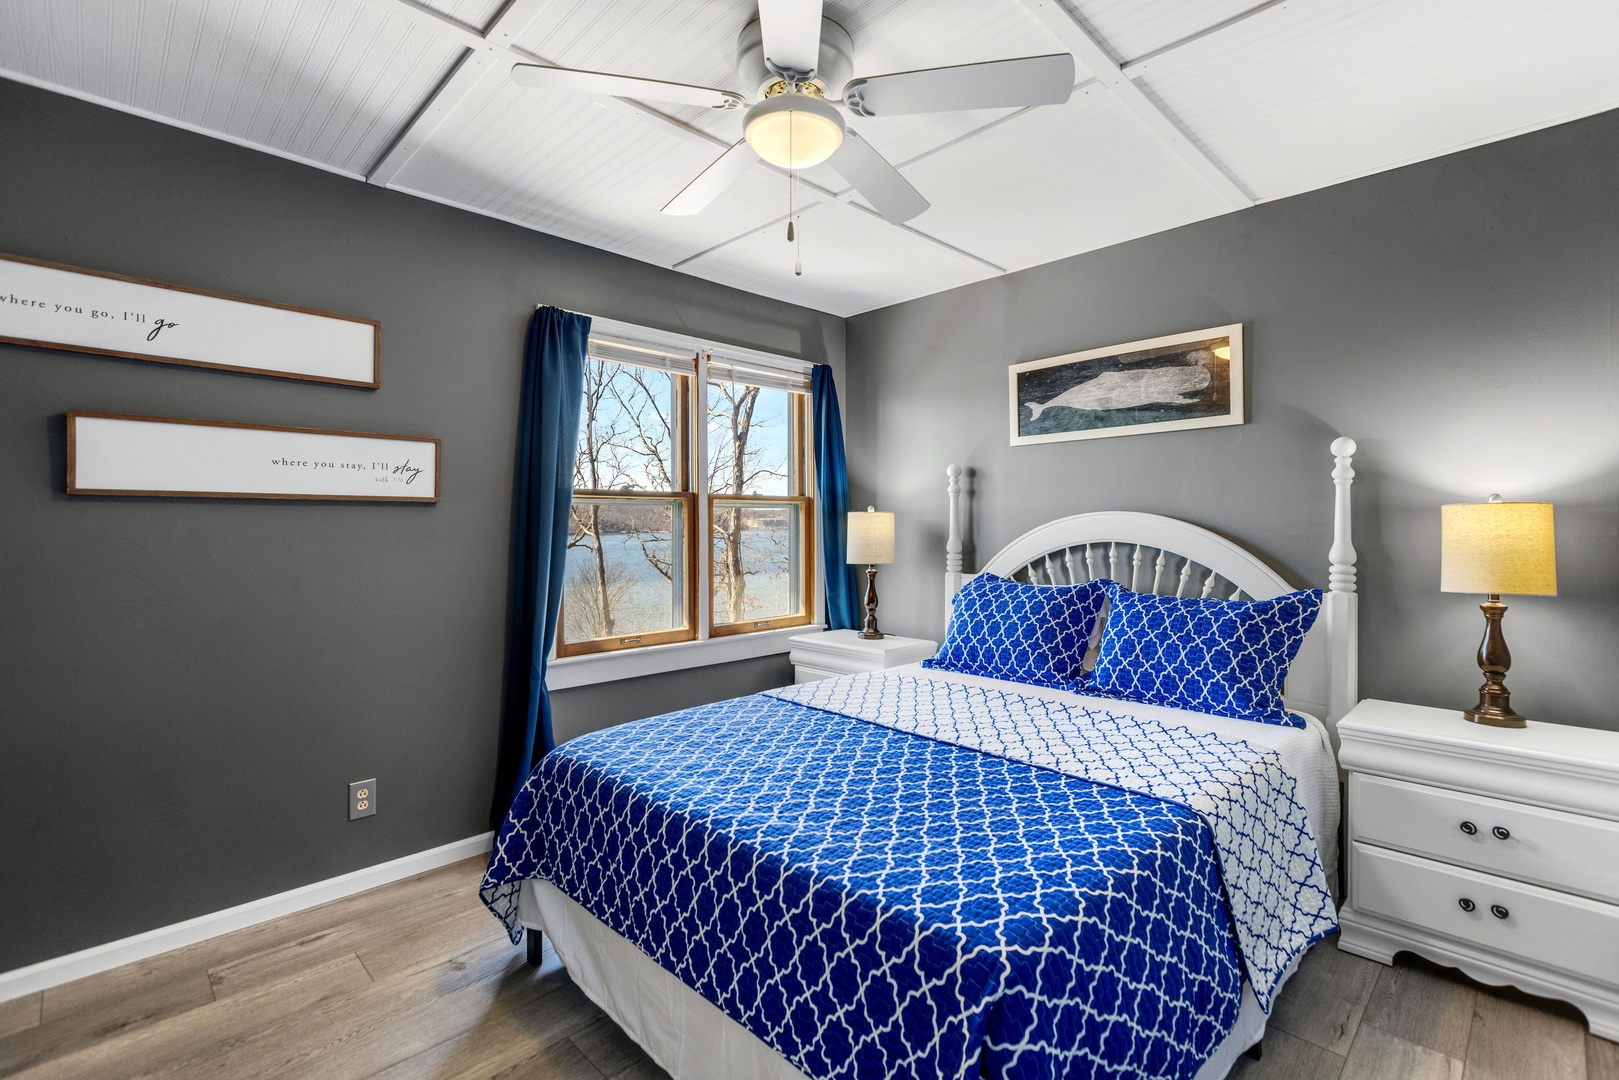 Queen-sized comfort awaits in this cozy bedroom retreat